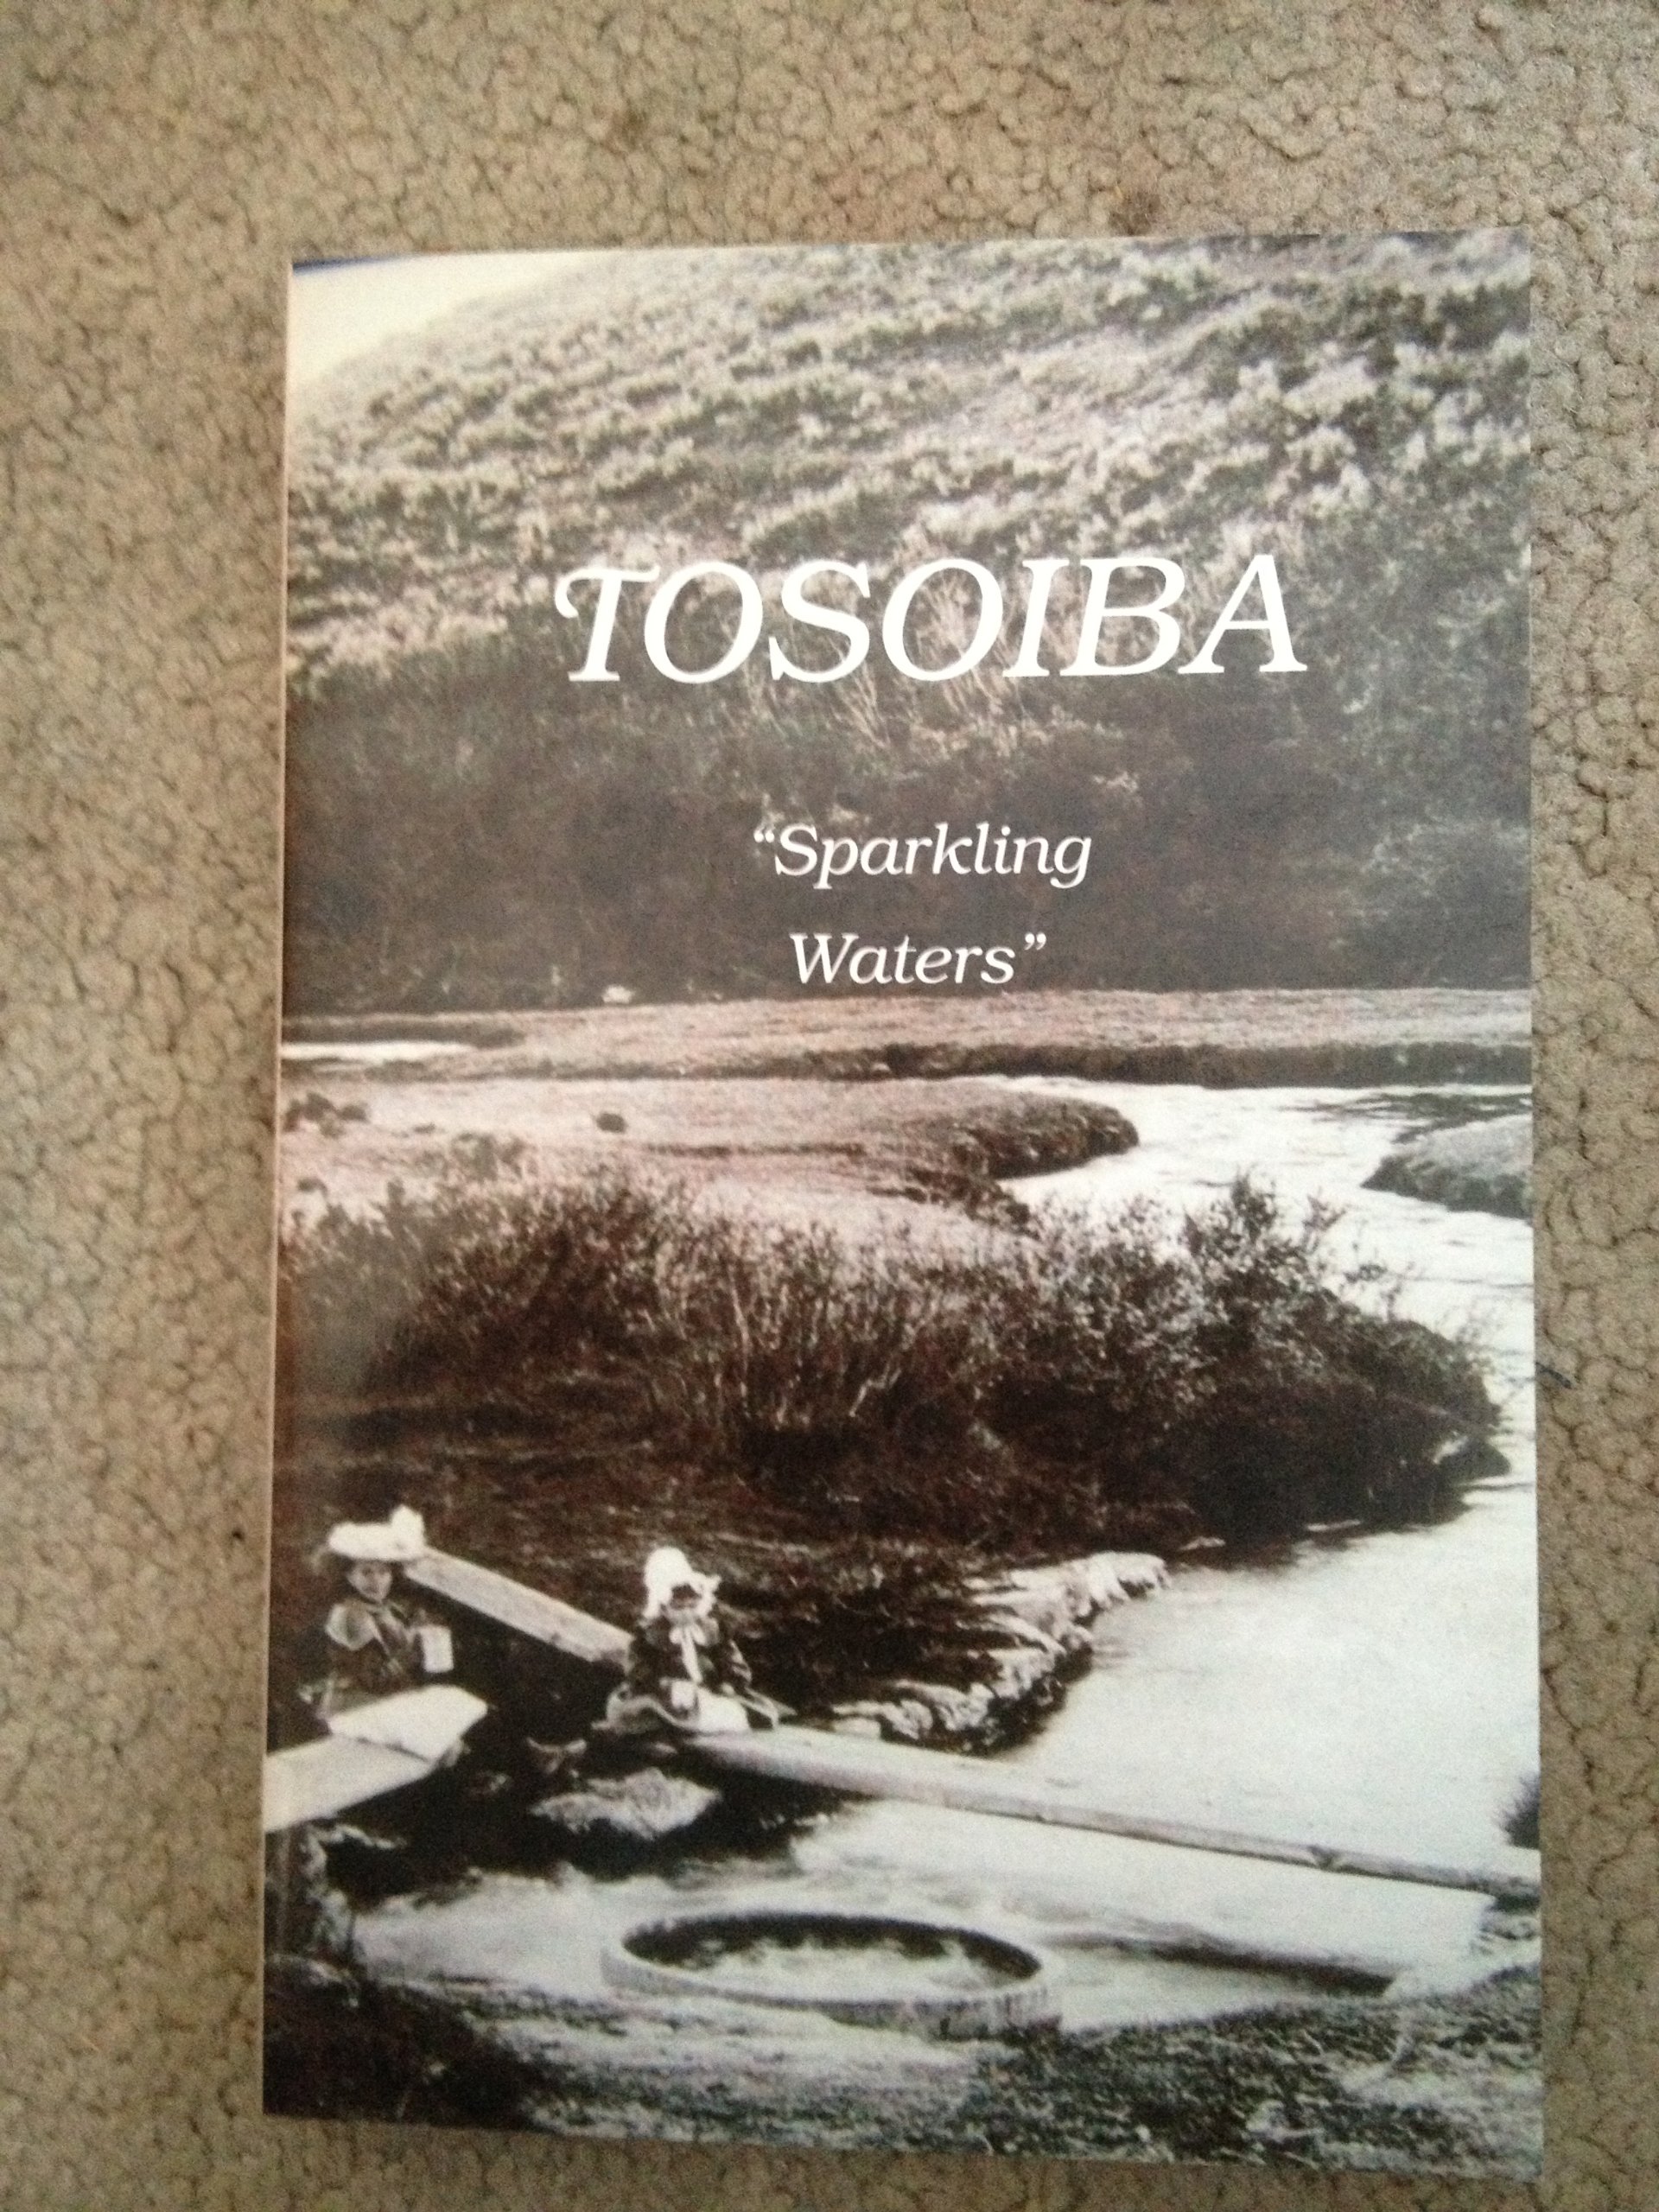 Tosoiba (book cover)